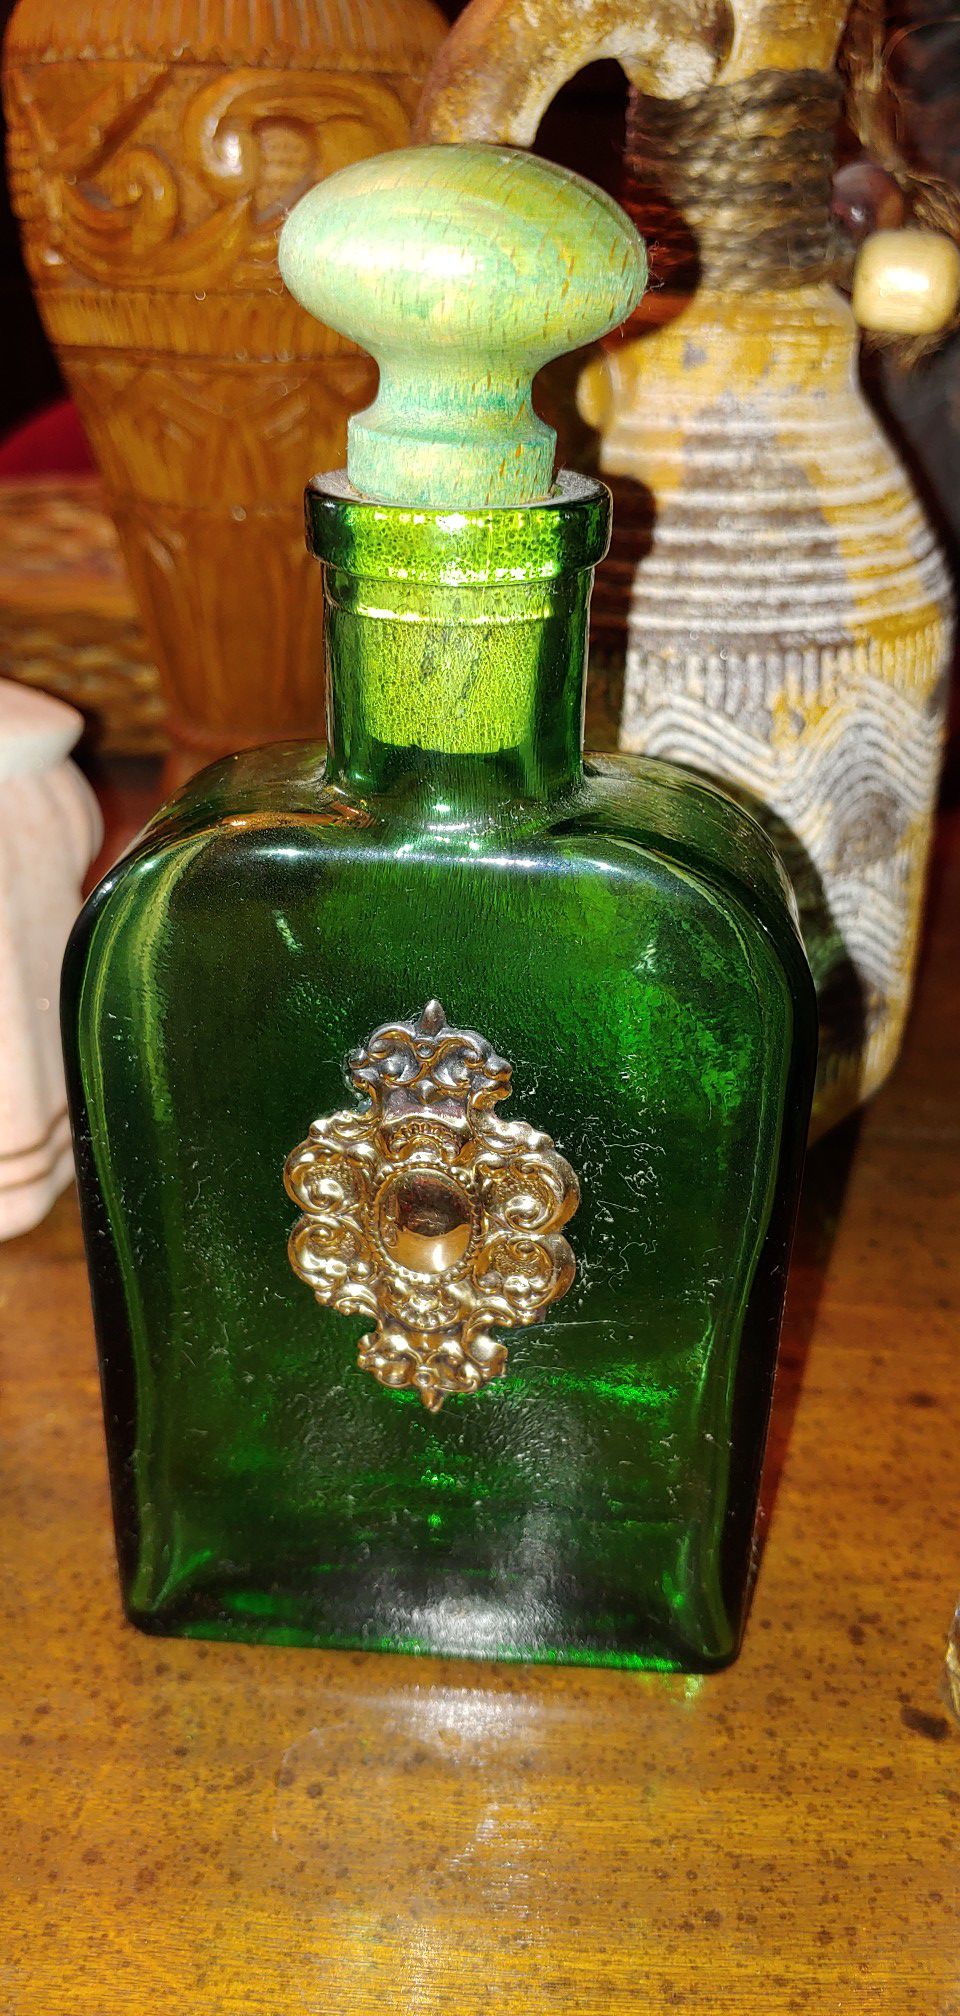 Antique glass medicine bottles